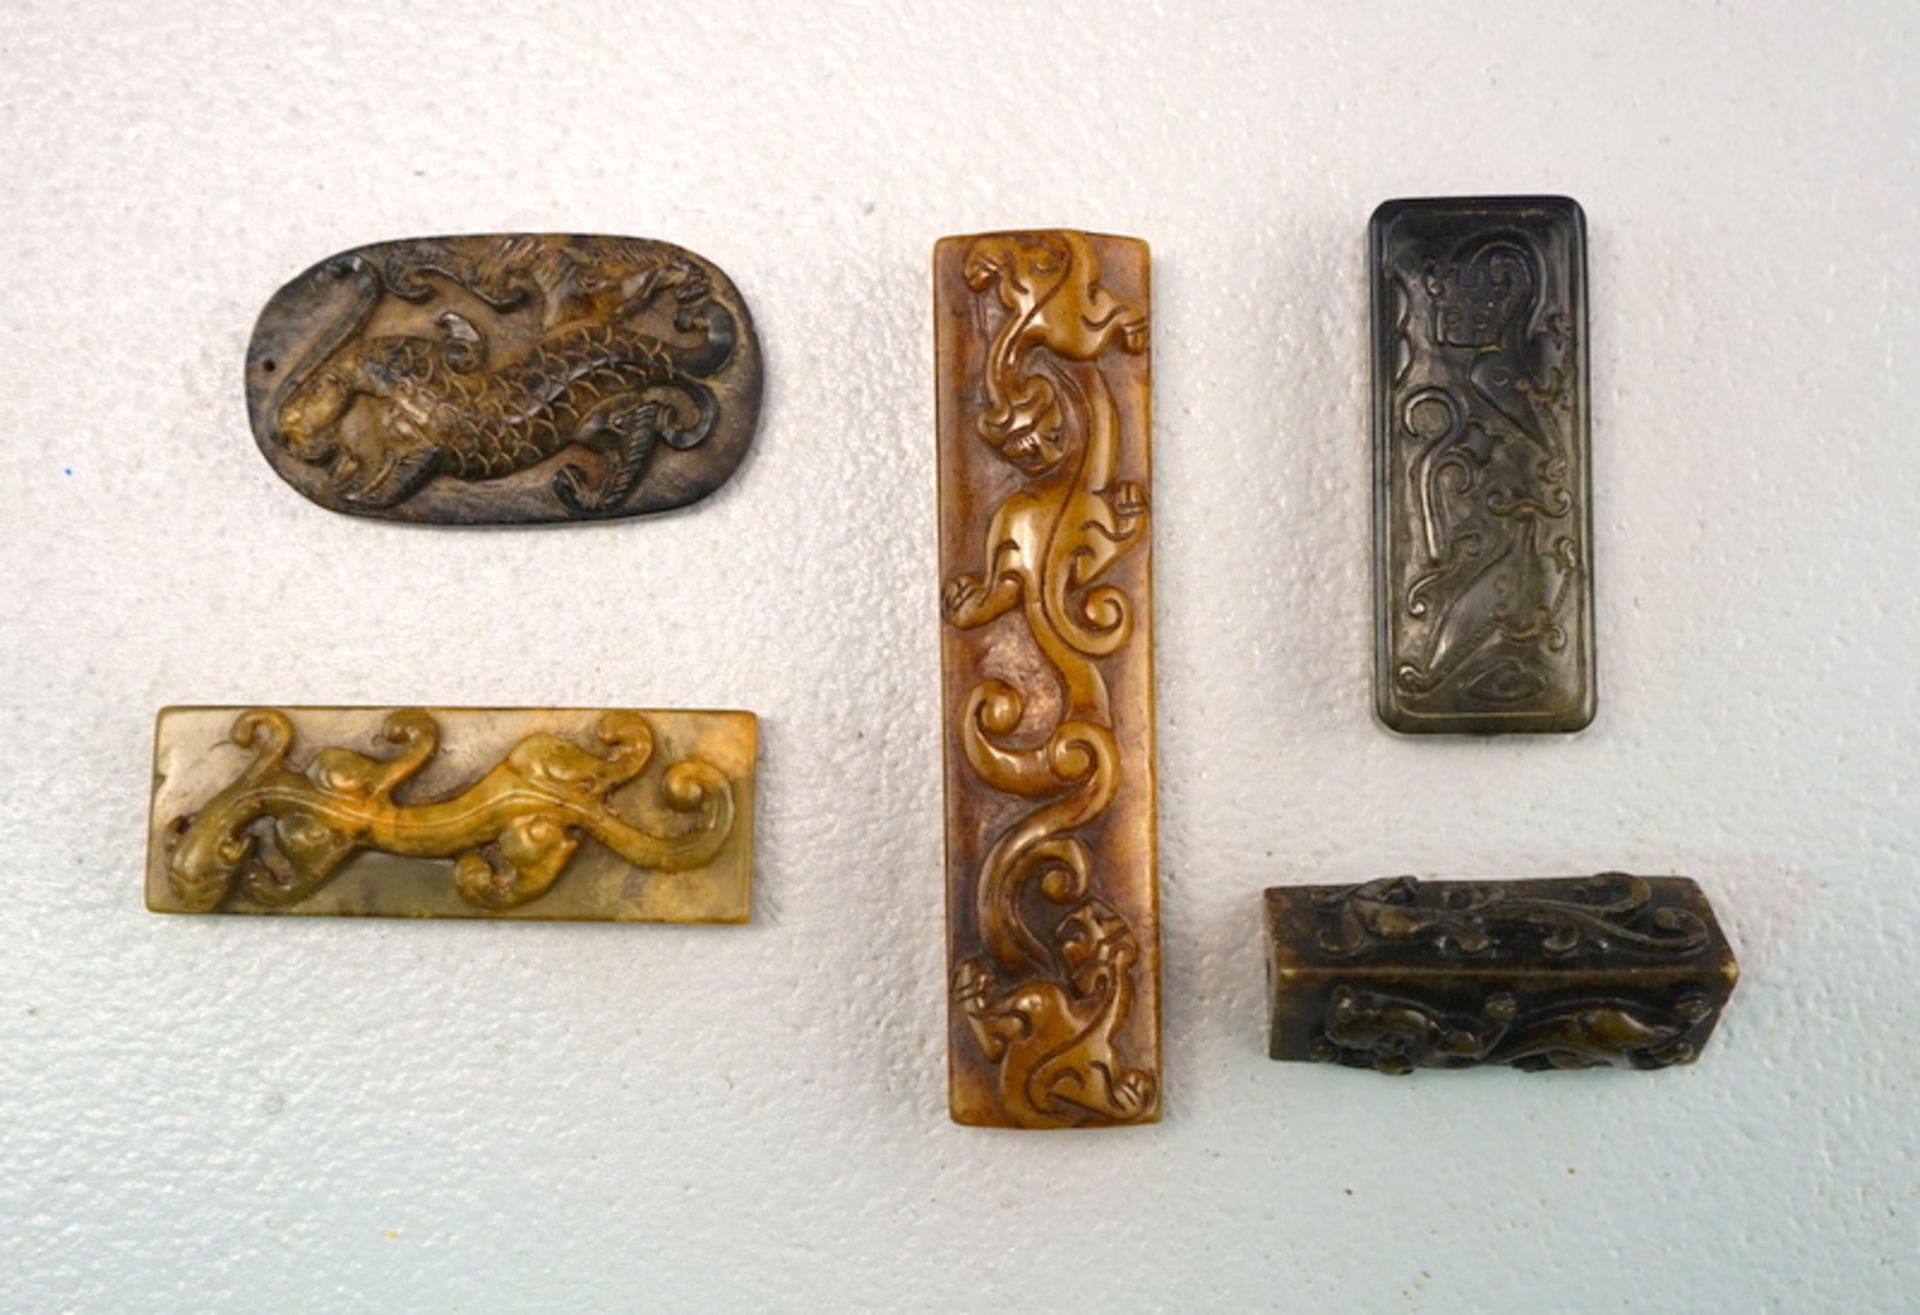 Sammlung von fünf Jadeschnitzereien mit Schilong-Darstellungen